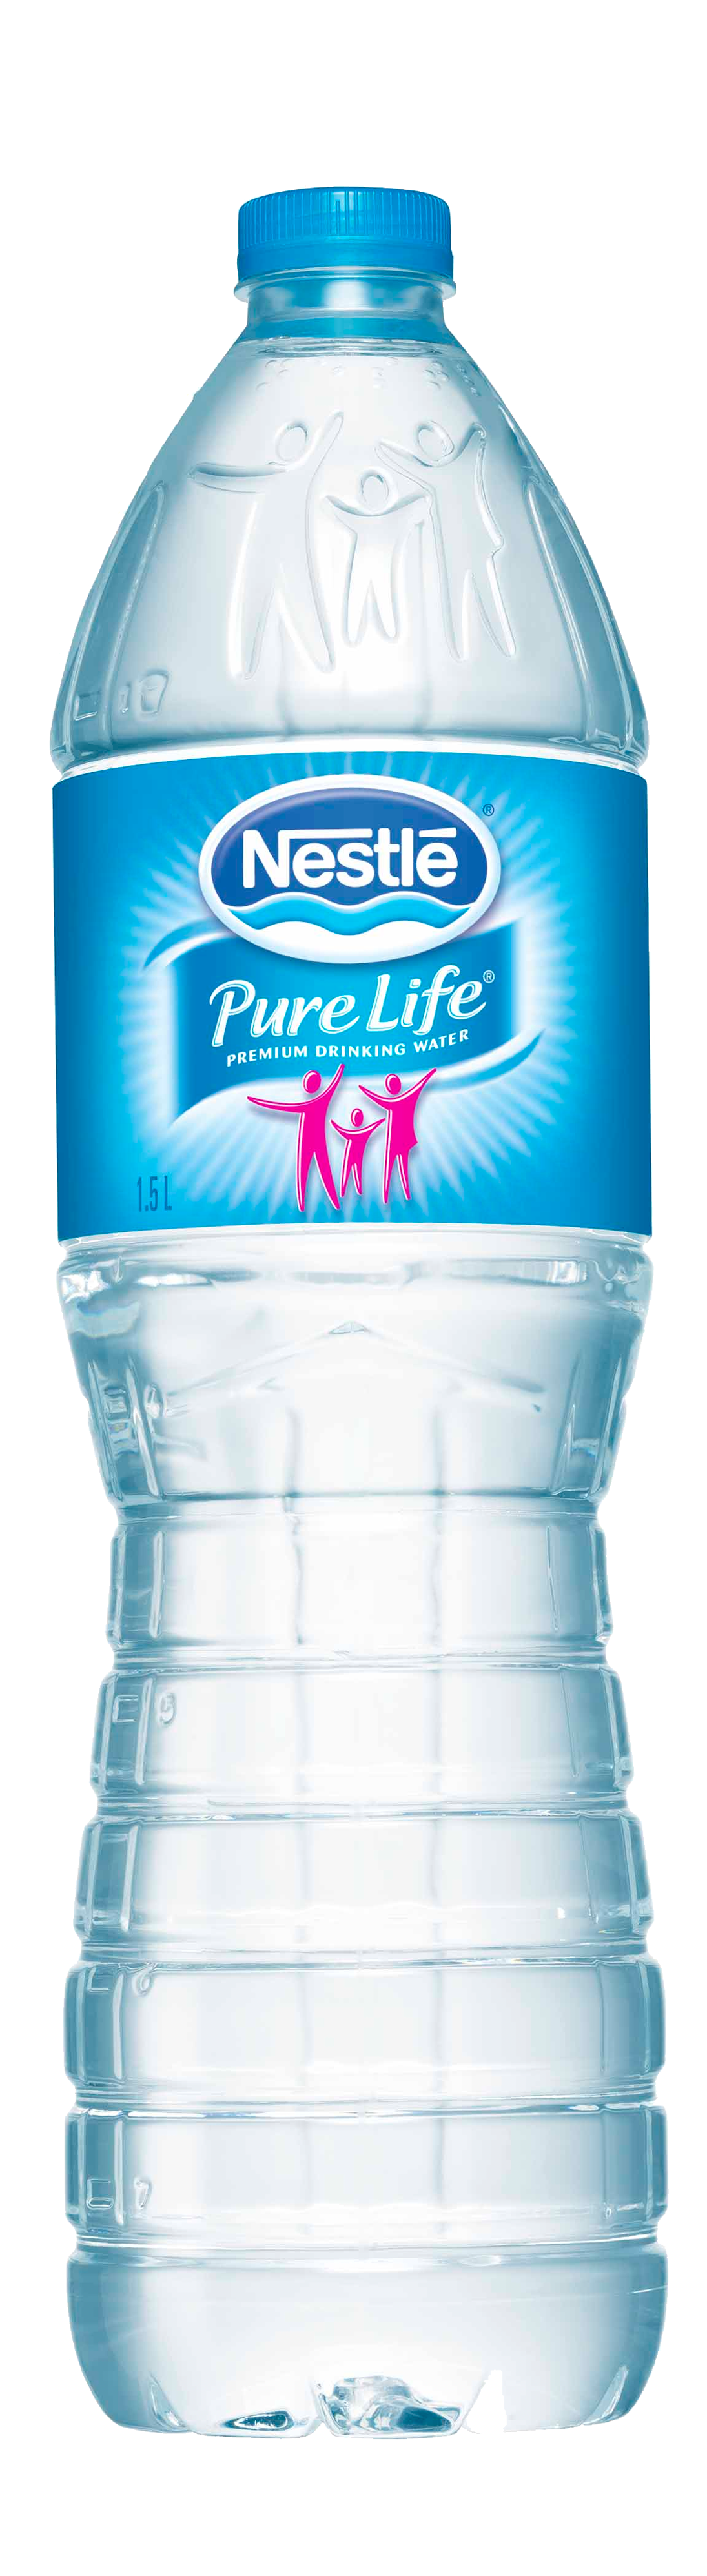 Nestle Water Bottle PNG HD  - Water Bottle Png